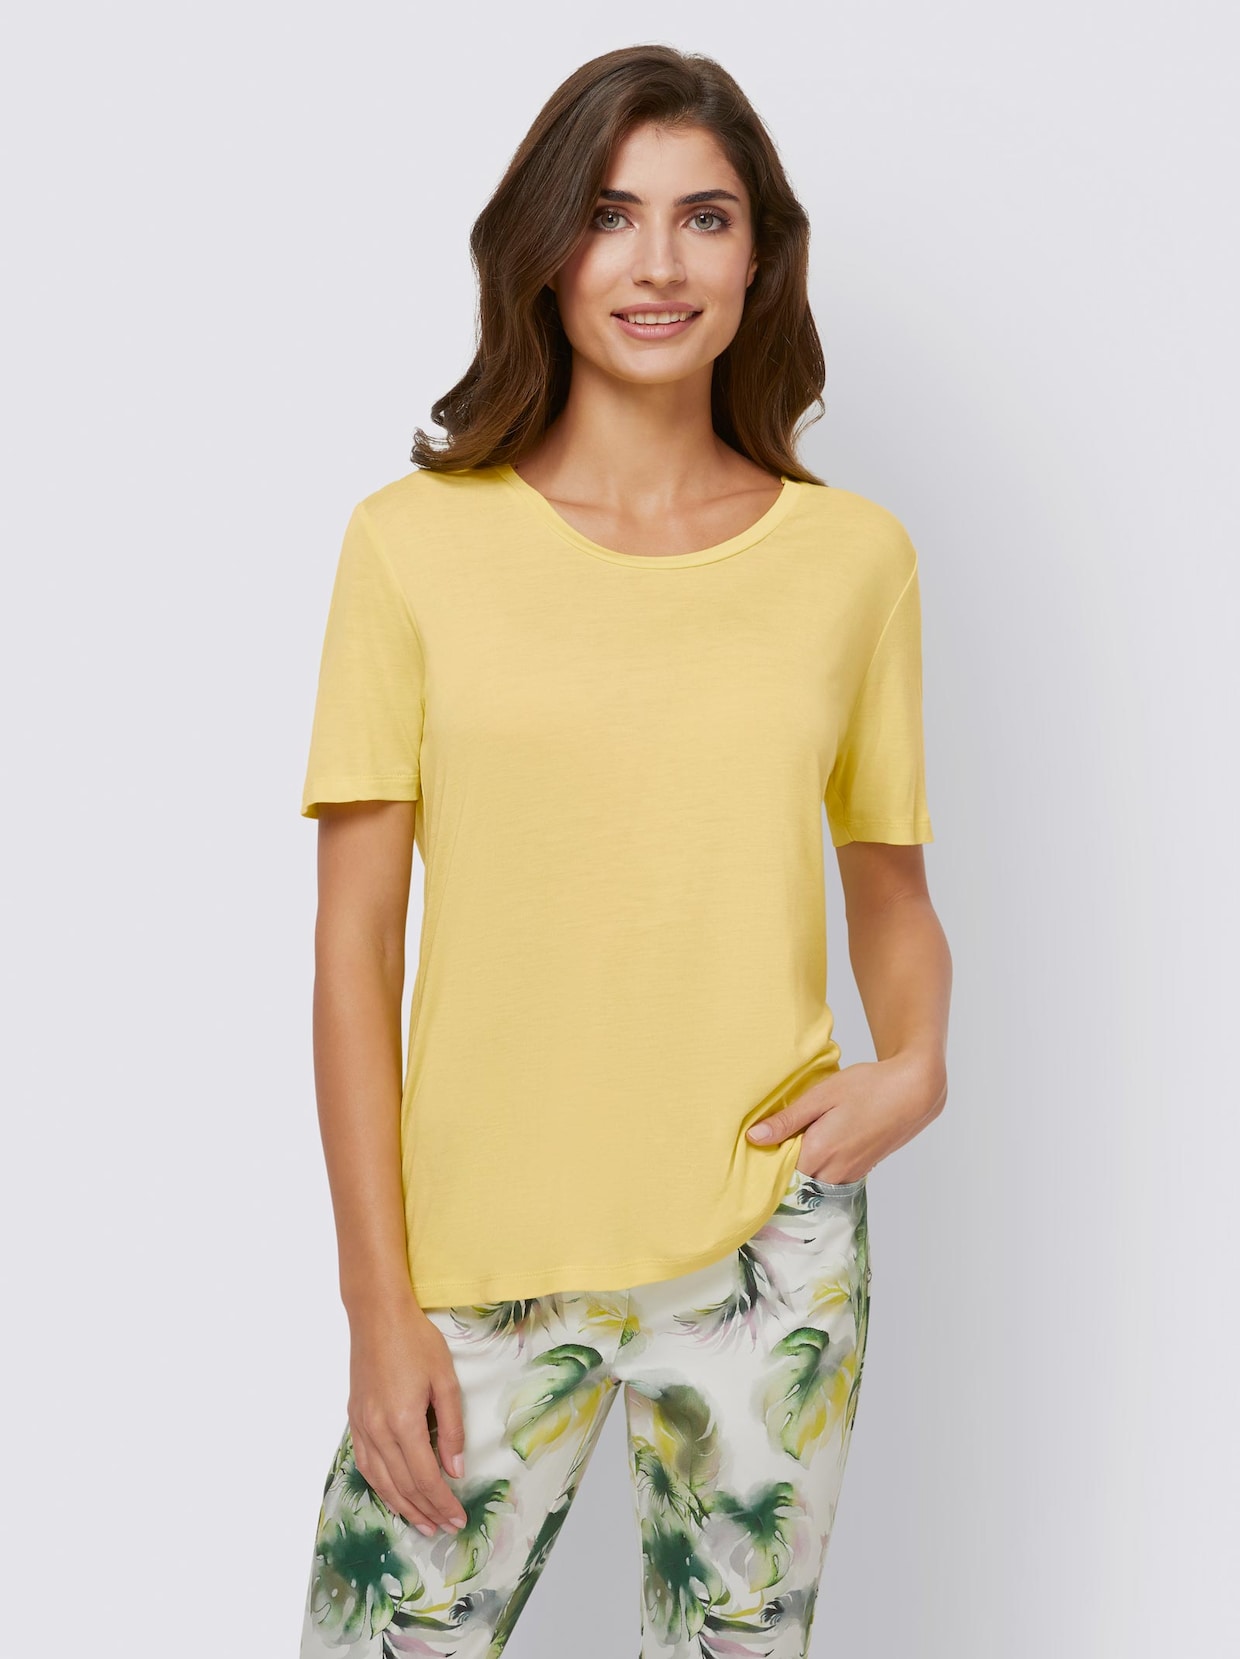 Ashley Brooke Shirt - limone